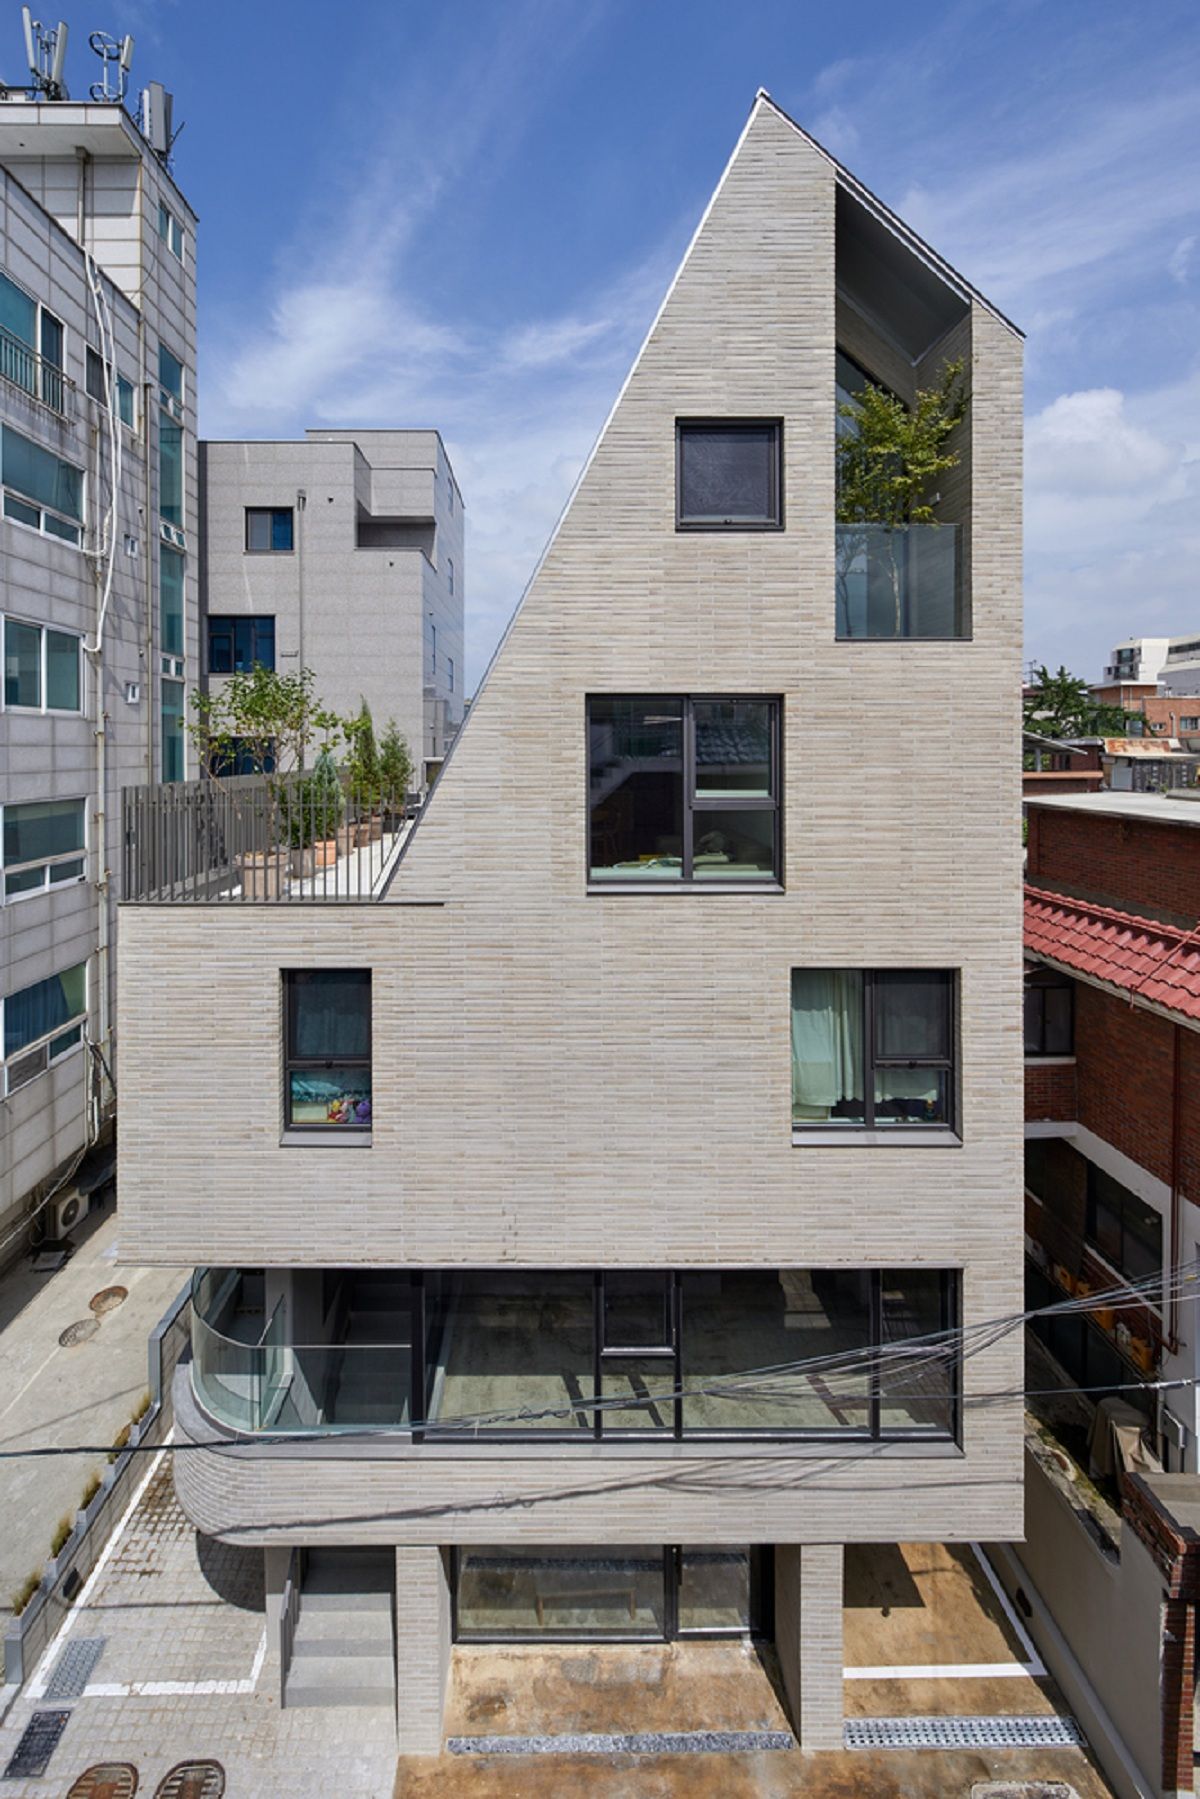 Lee Lee Heon - Tòa nhà phức hợp tái hiện những nét xưa trong đô thị hiện đại | SOSU architects